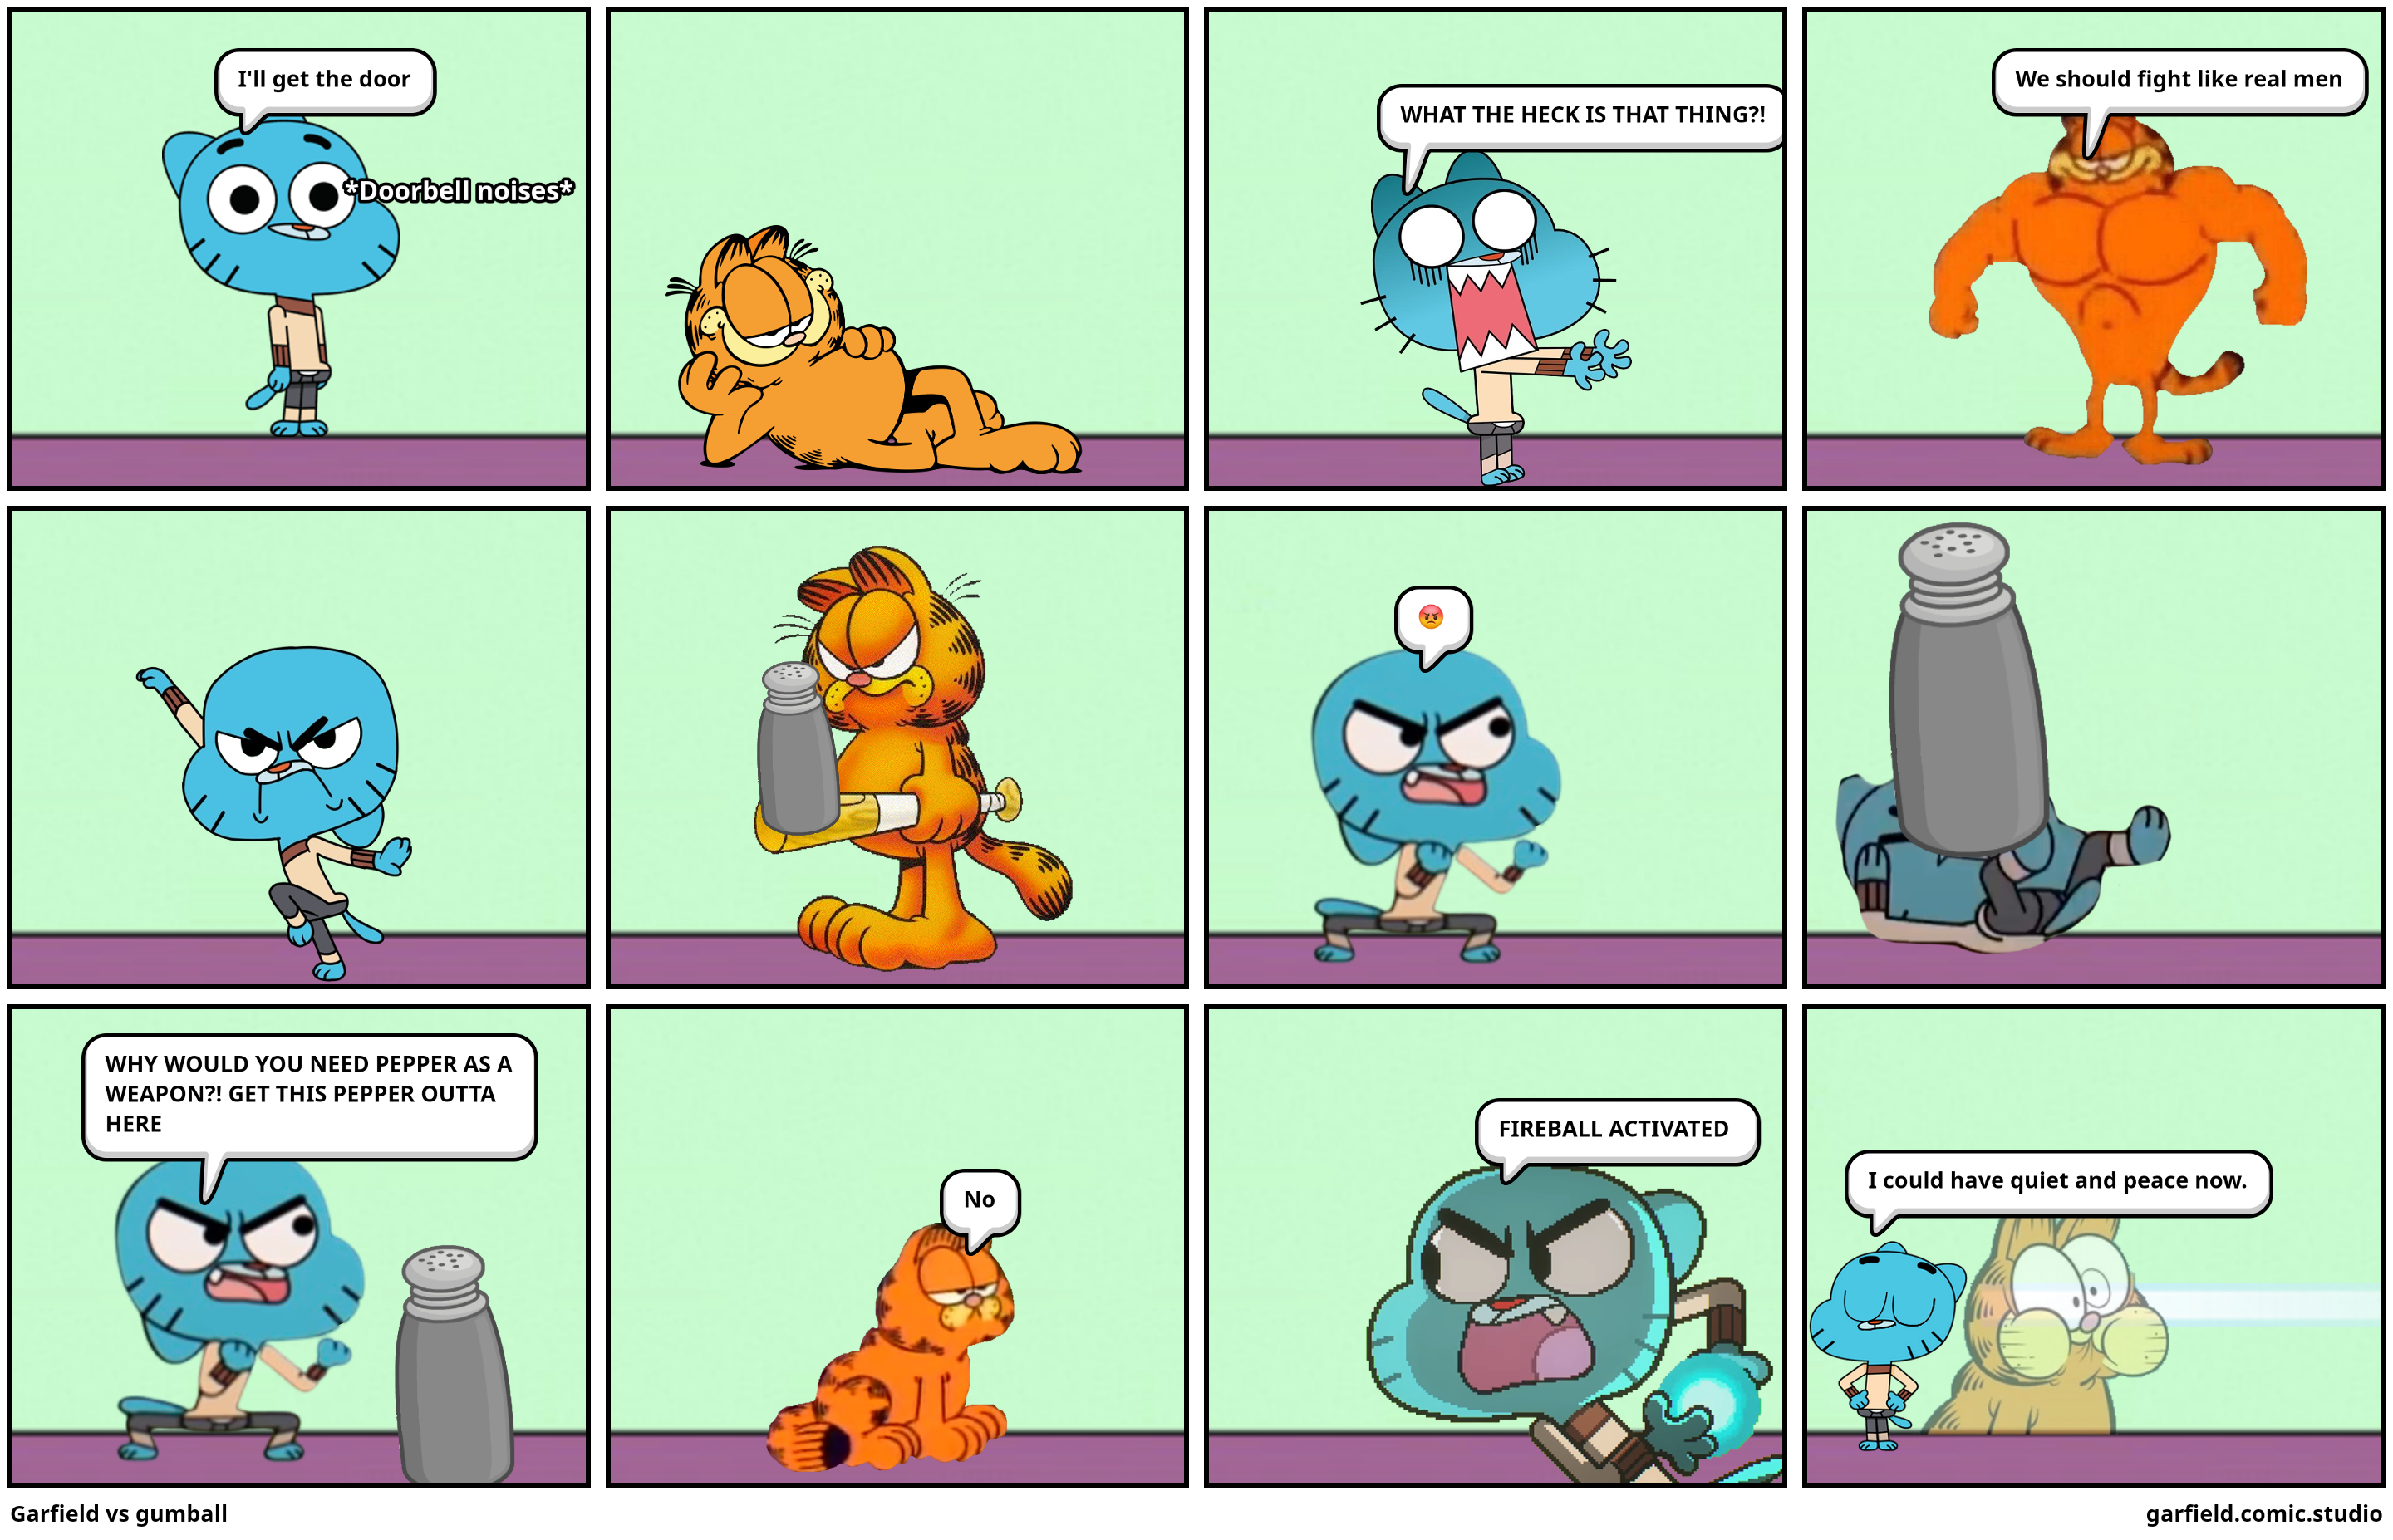 Garfield vs gumball